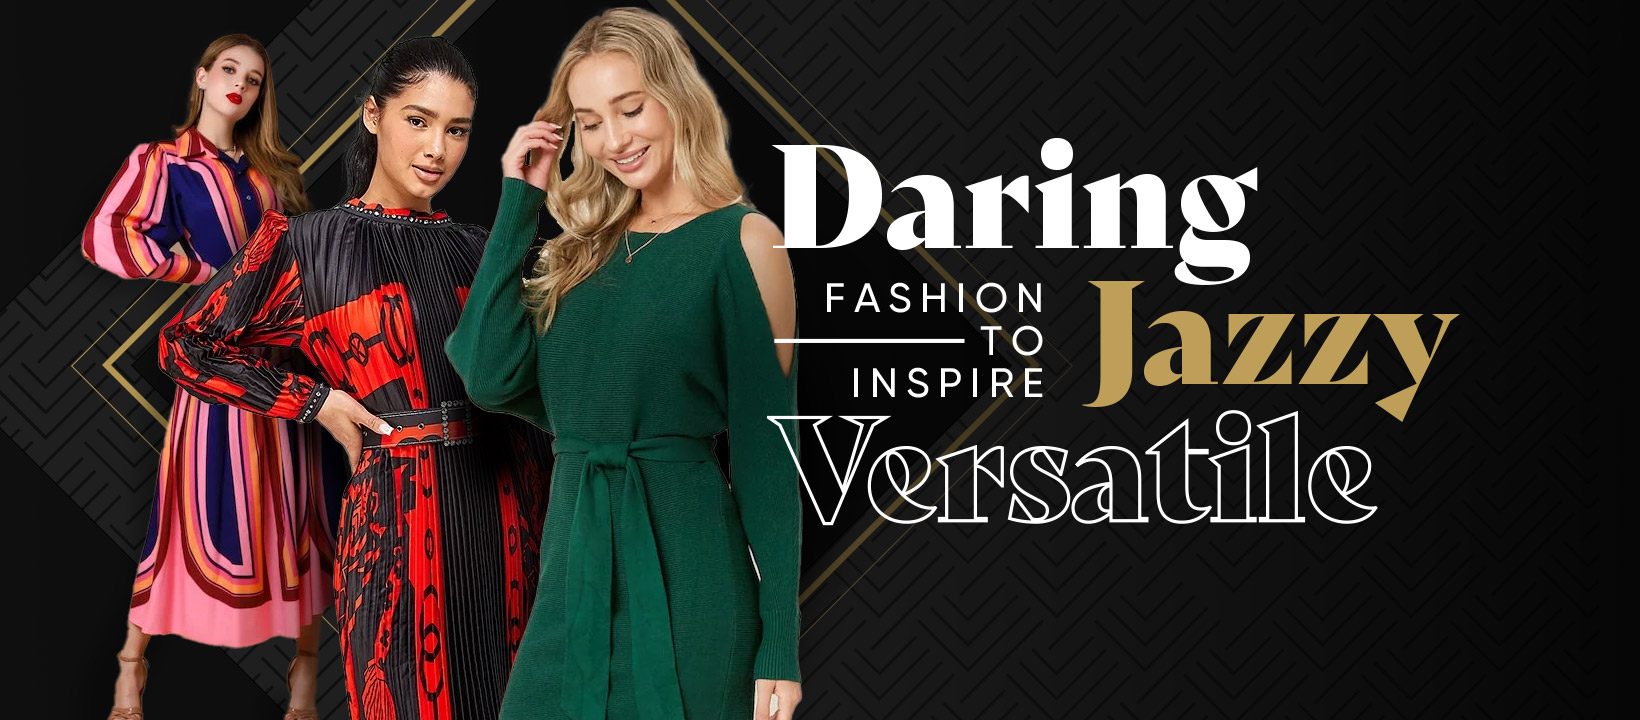 DJV Boutique Ipswich - Daring, Jazzy, Versatile - Fashion to Inspire!